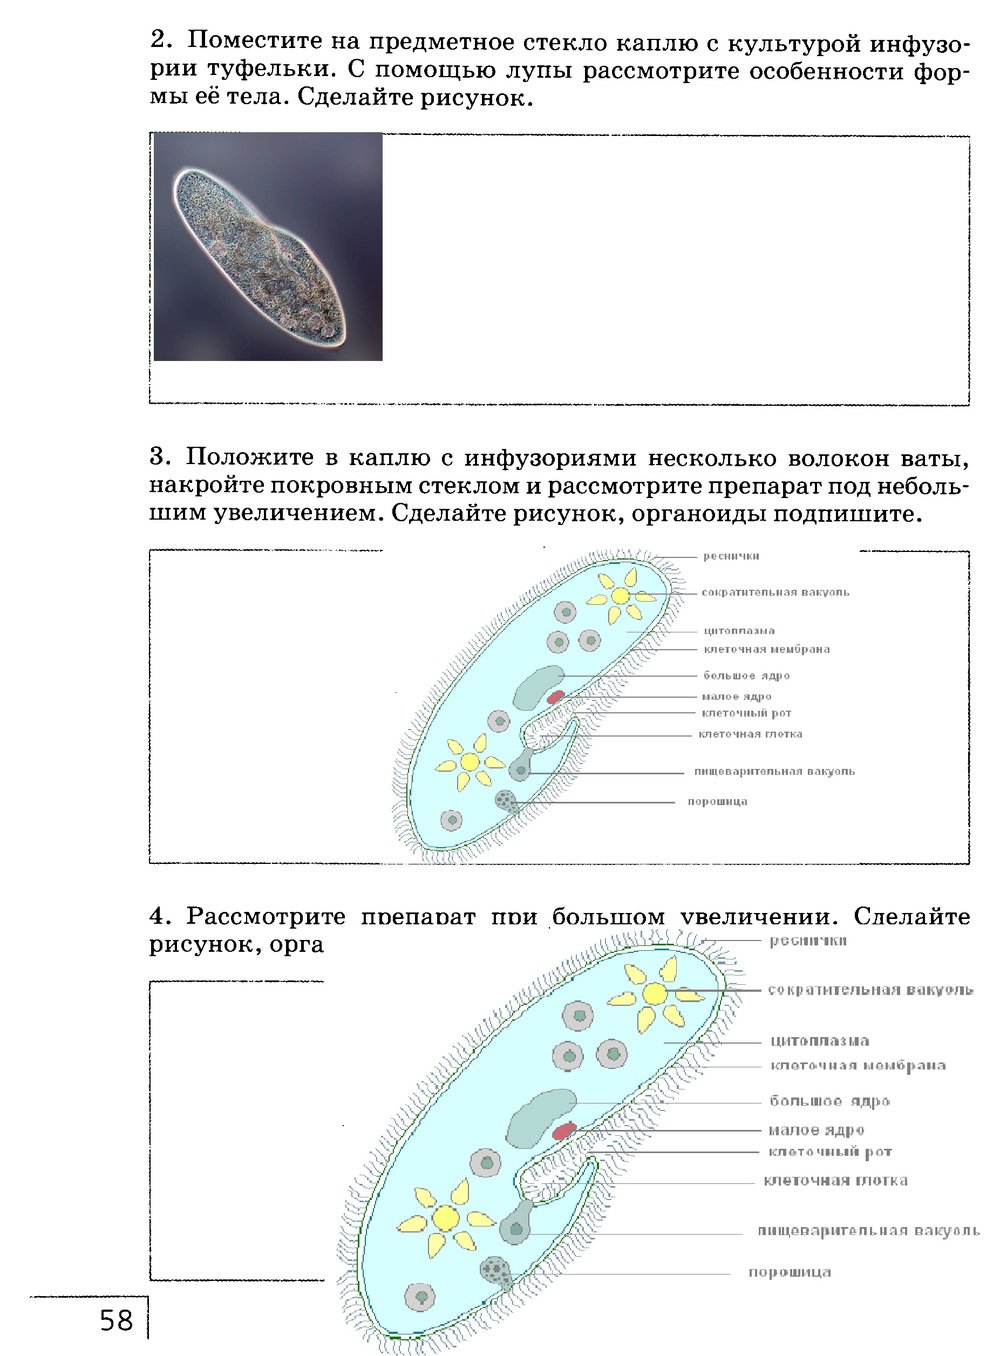 гдз 7 класс рабочая тетрадь страница 58 биология Захаров, Сонин